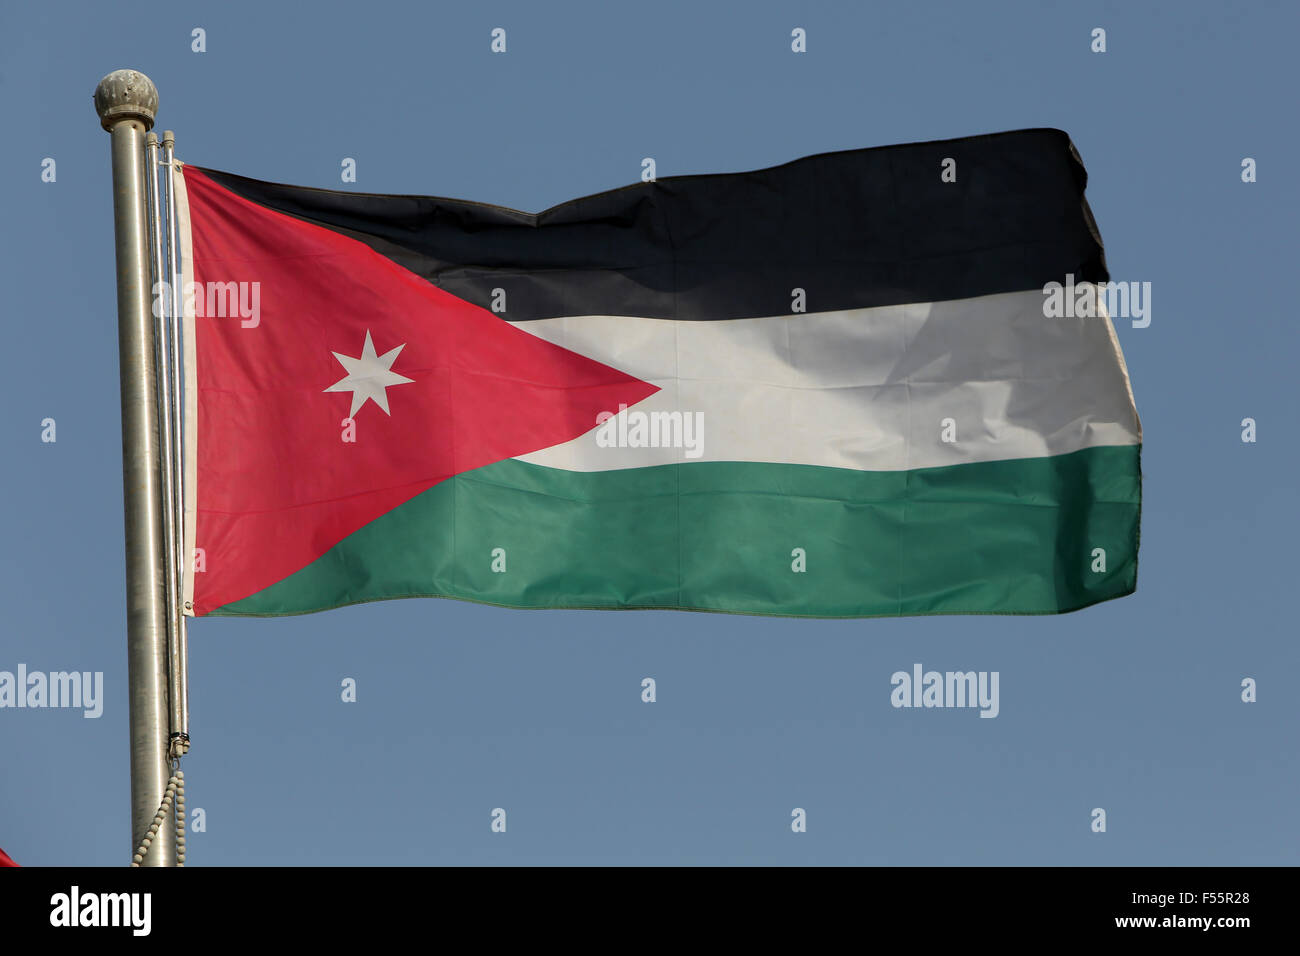 03.03.2015, Doha, Doha, Qatar - la bandiera nazionale della Giordania. 00S150303D602CAROEX.JPG - non per la vendita in G E R M A N Y, A U S T R I A, S W I T Z e R L A N D [modello di rilascio: non applicabile, la proprietà di rilascio: NO (c) caro agenzia fotografica / sorge, http://www.caro-images.pl, info@carofoto.pl - nel caso di utilizzo di foto per non-scopi giornalistici, siete pregati di contattare l'Agenzia - la foto è soggetto a royalty!] Foto Stock